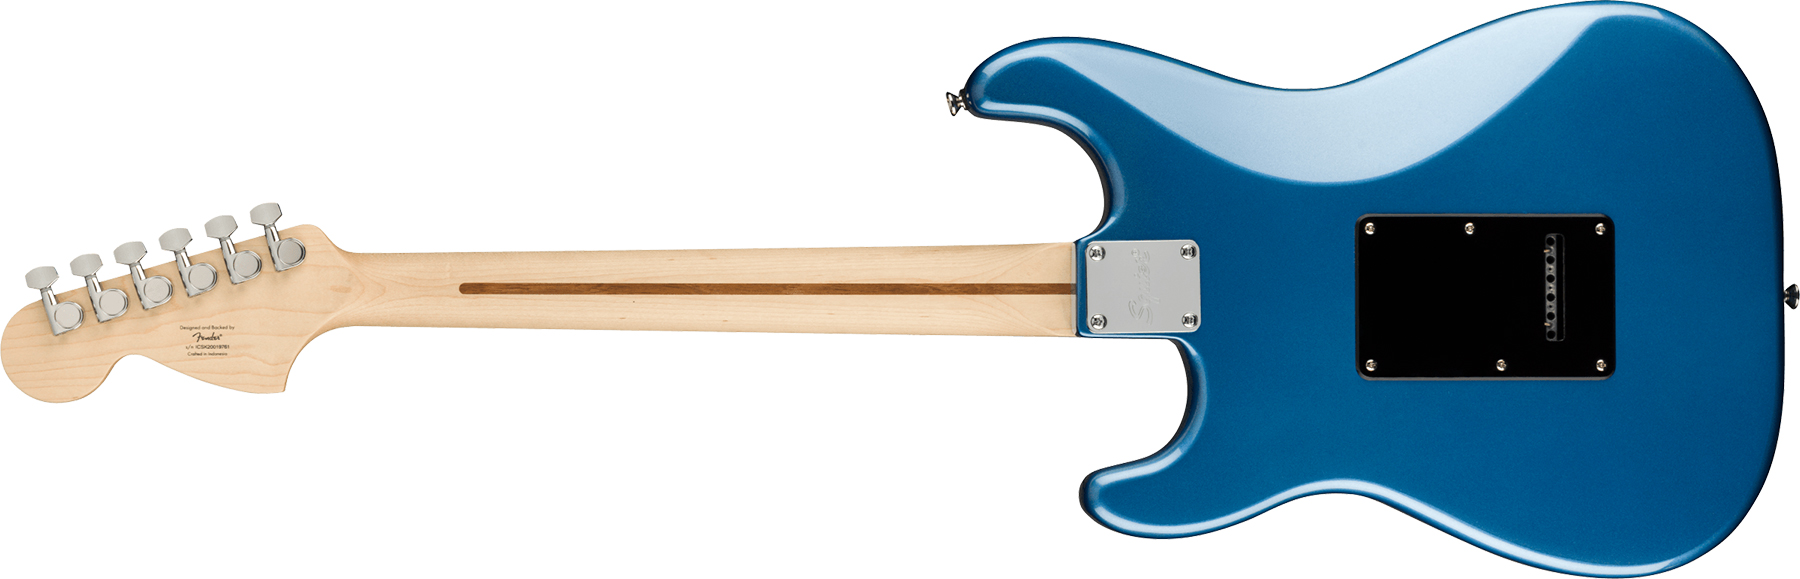 Squier Strat Affinity 2021 Sss Trem Mn - Lake Placid Blue - Str shape electric guitar - Variation 1